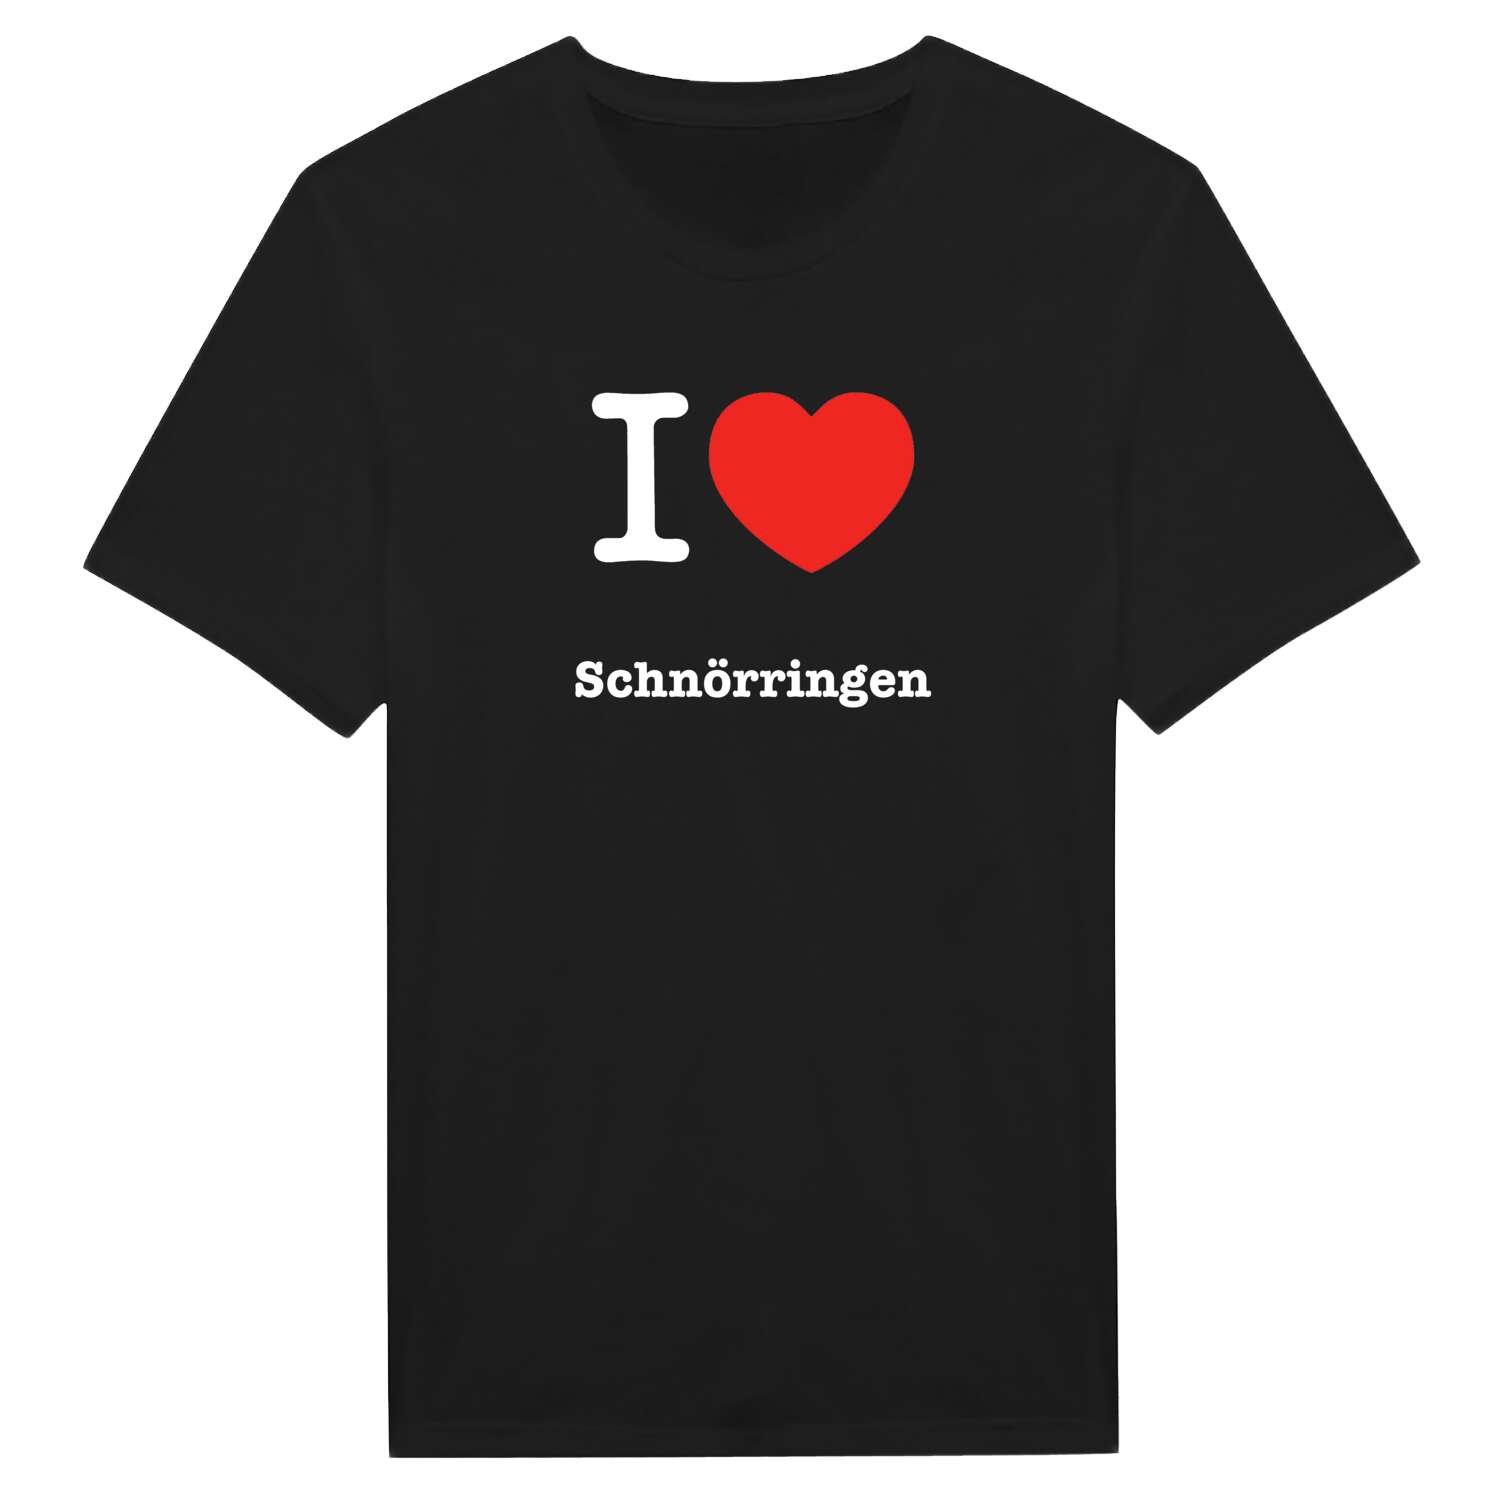 Schnörringen T-Shirt »I love«